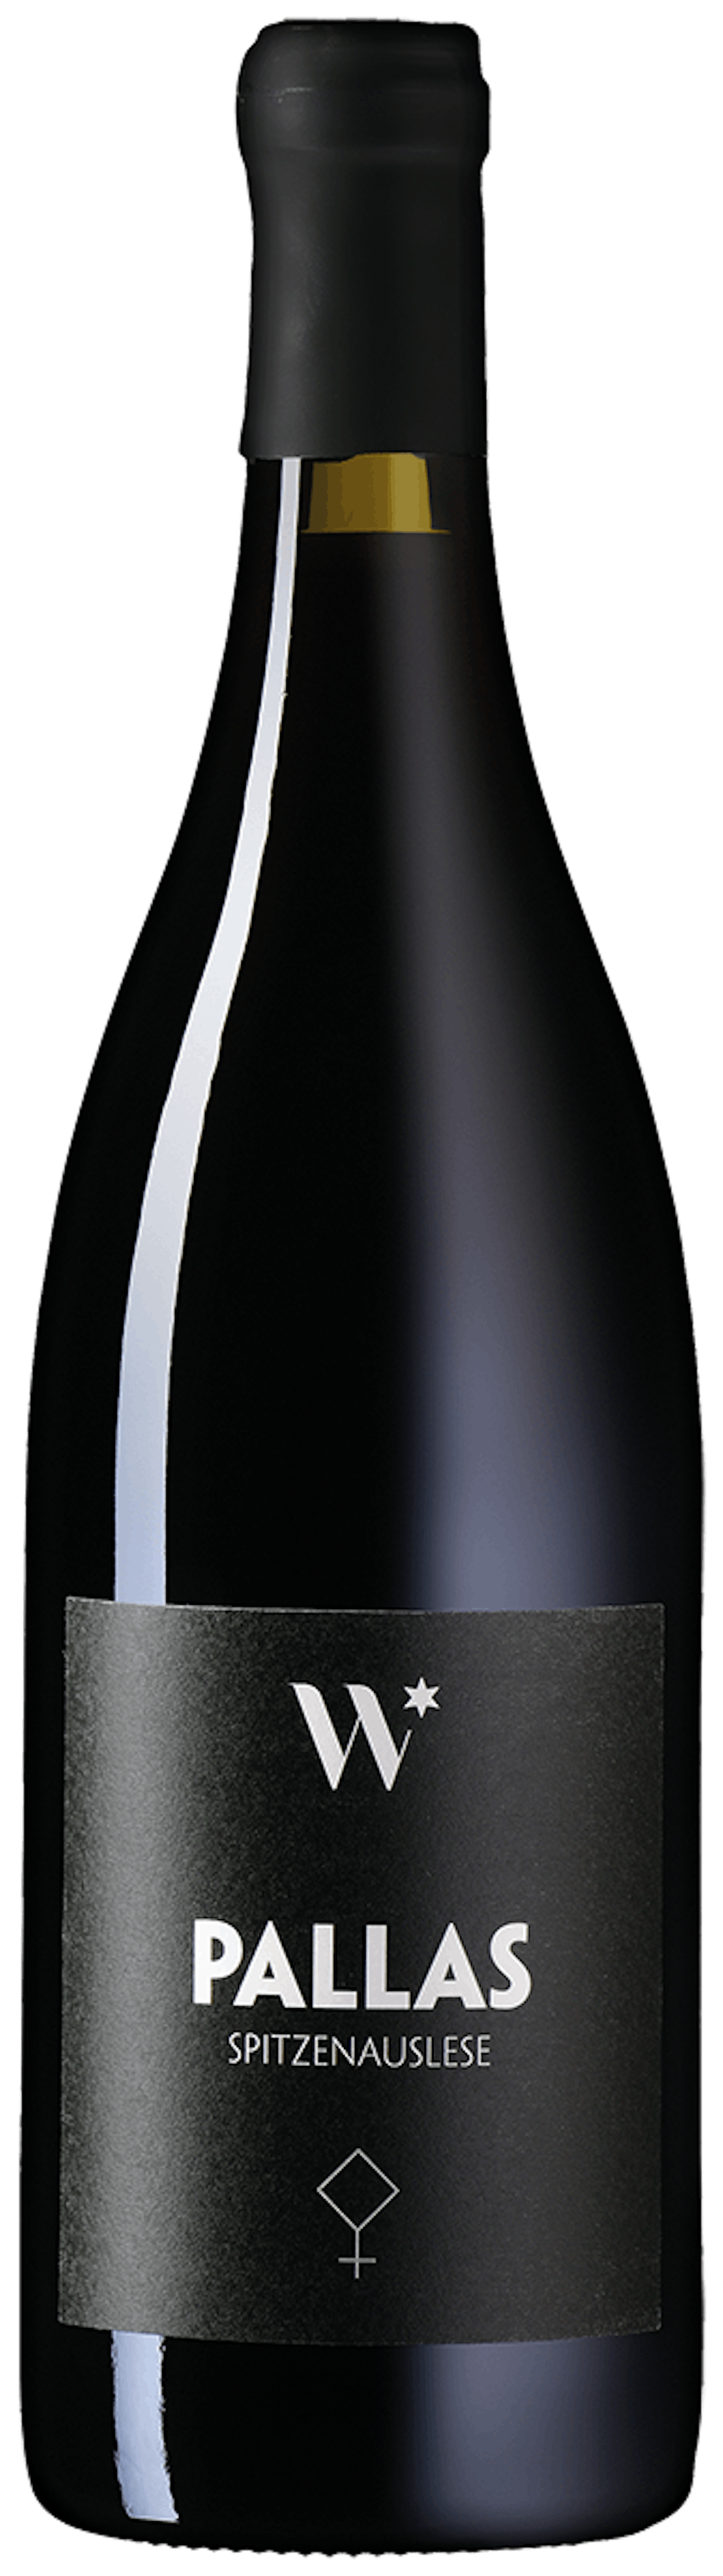 Pallas Spitzenauslese Pinot Noir